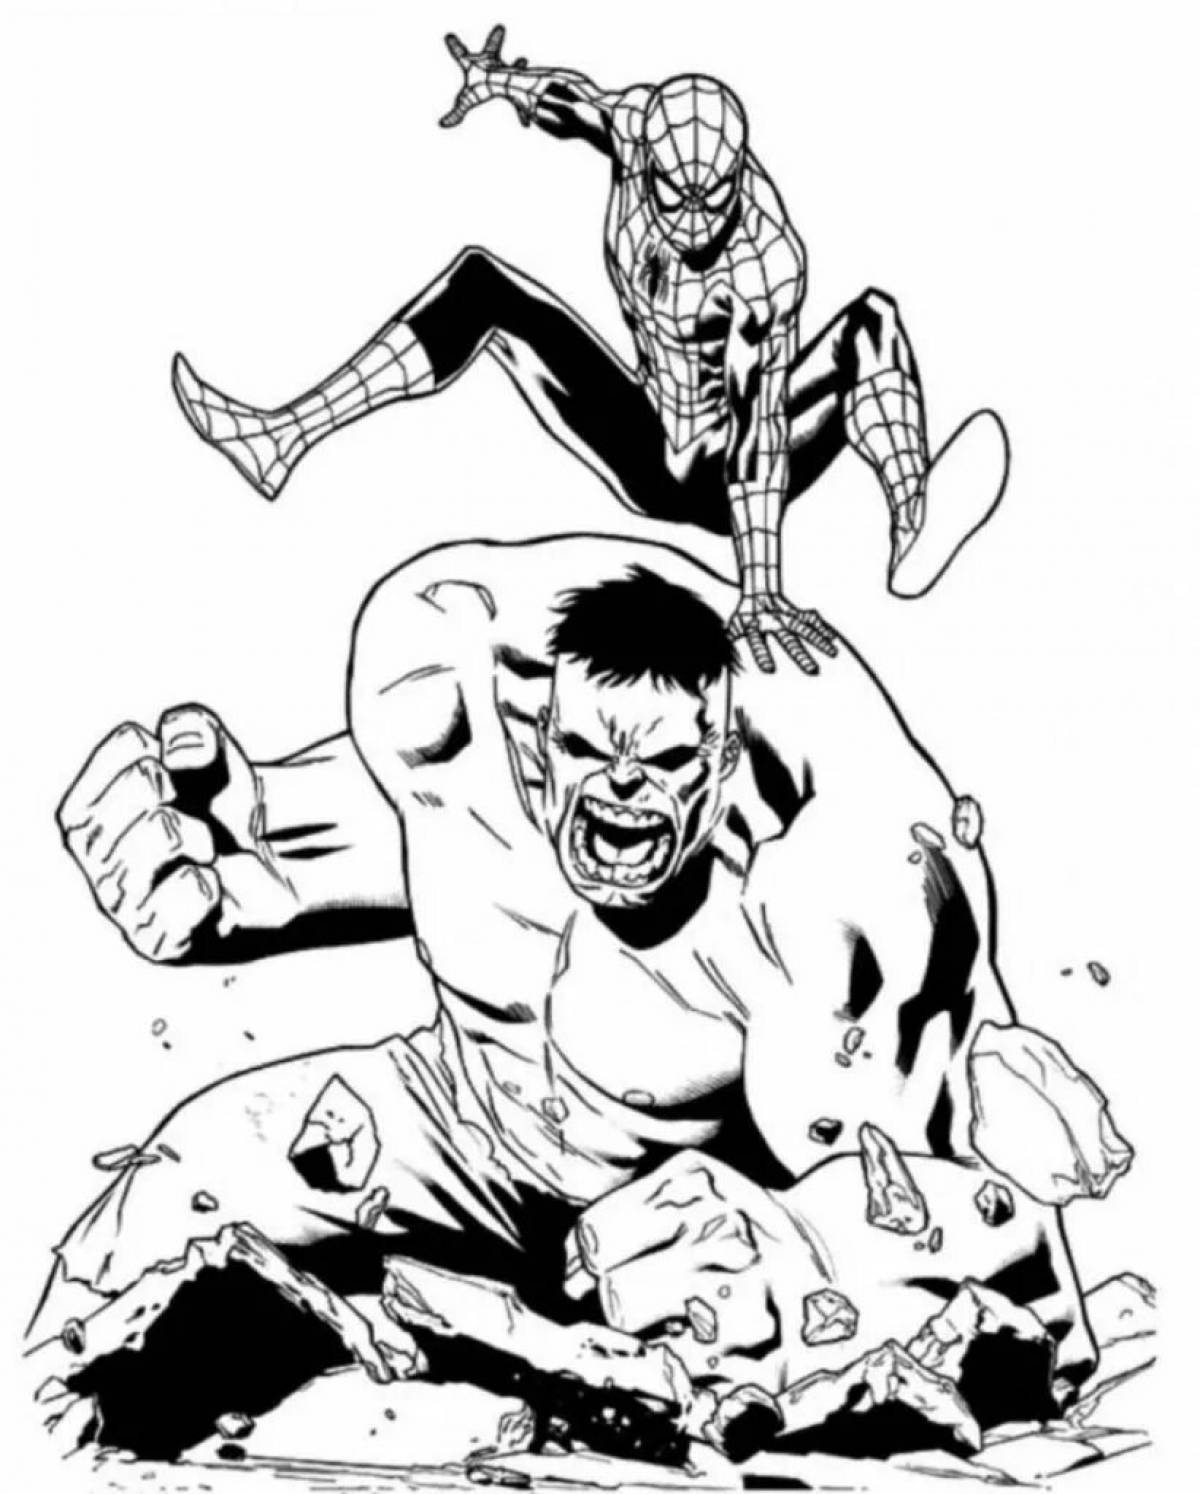 Spider Hulk #4